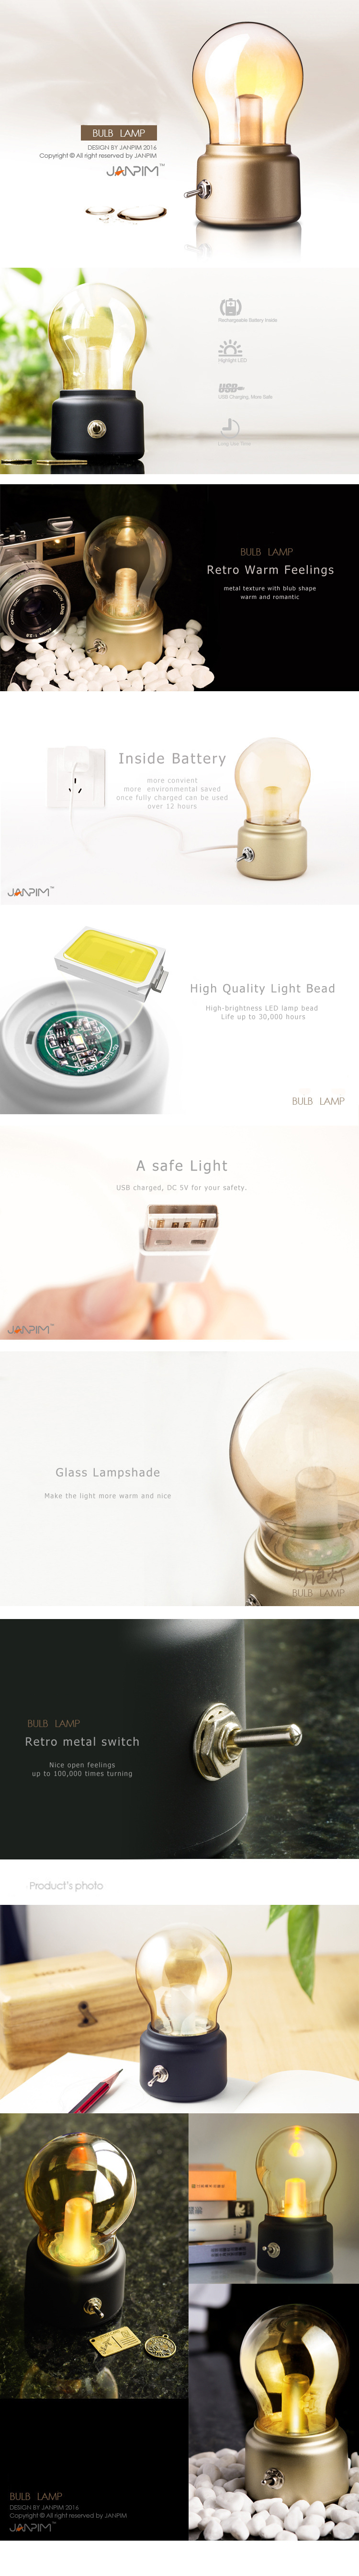 Lâmpada de lâmpada retro USB carregamento portátil mini mesa de luz bulbo forma pequena luz noturna